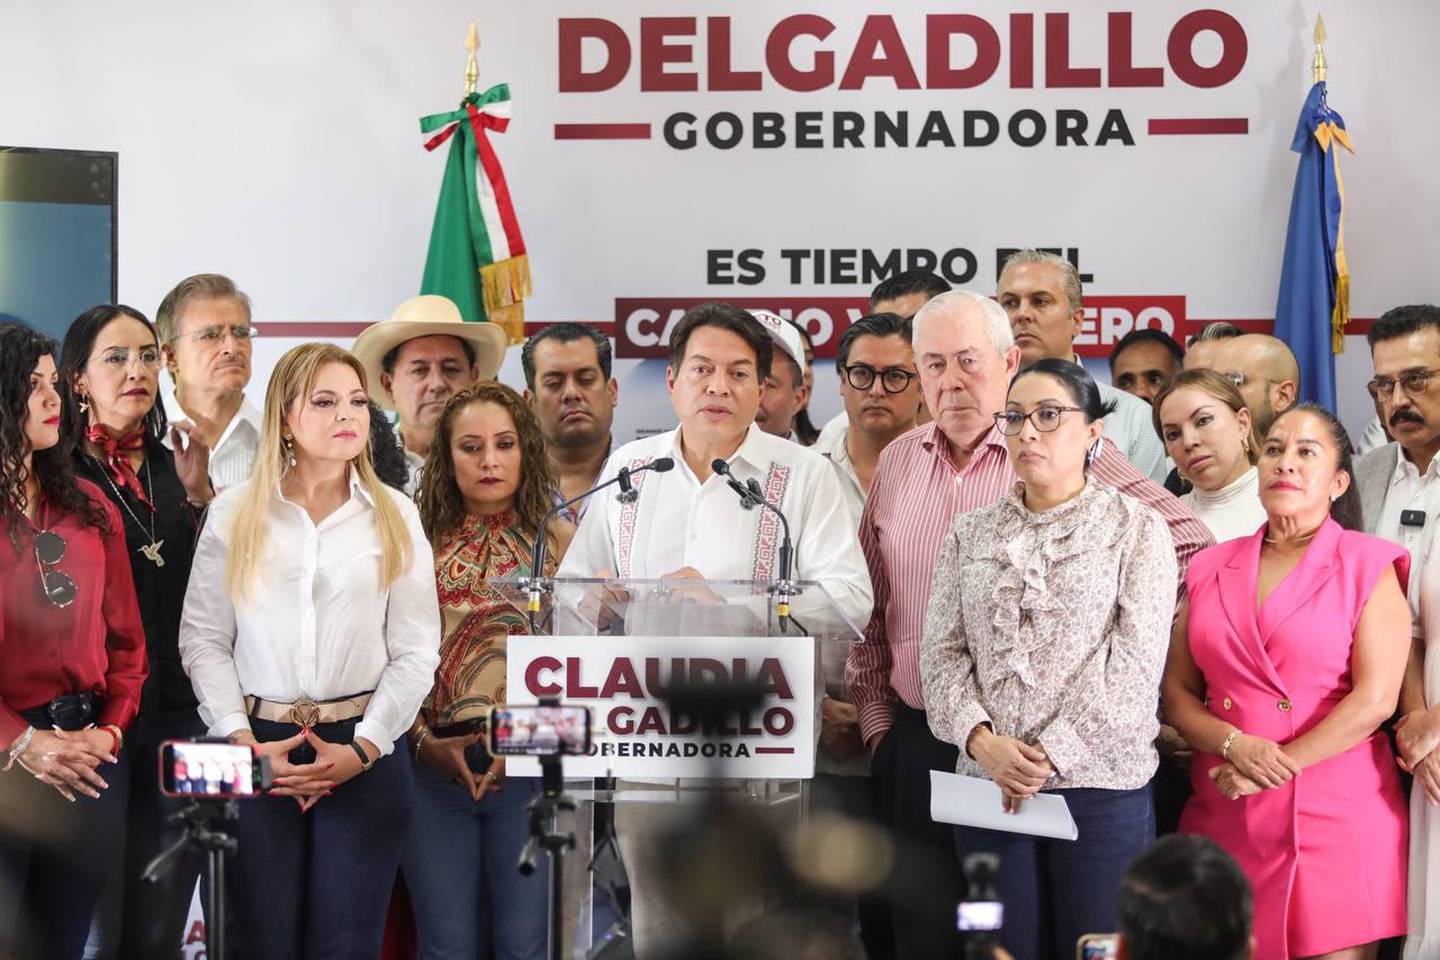 El dirigente nacional de Morena, Mario Delgado, aseguró que impugnará la elección gubernamental en Jalisco (Foto: X | @ClaudDelgadillo)